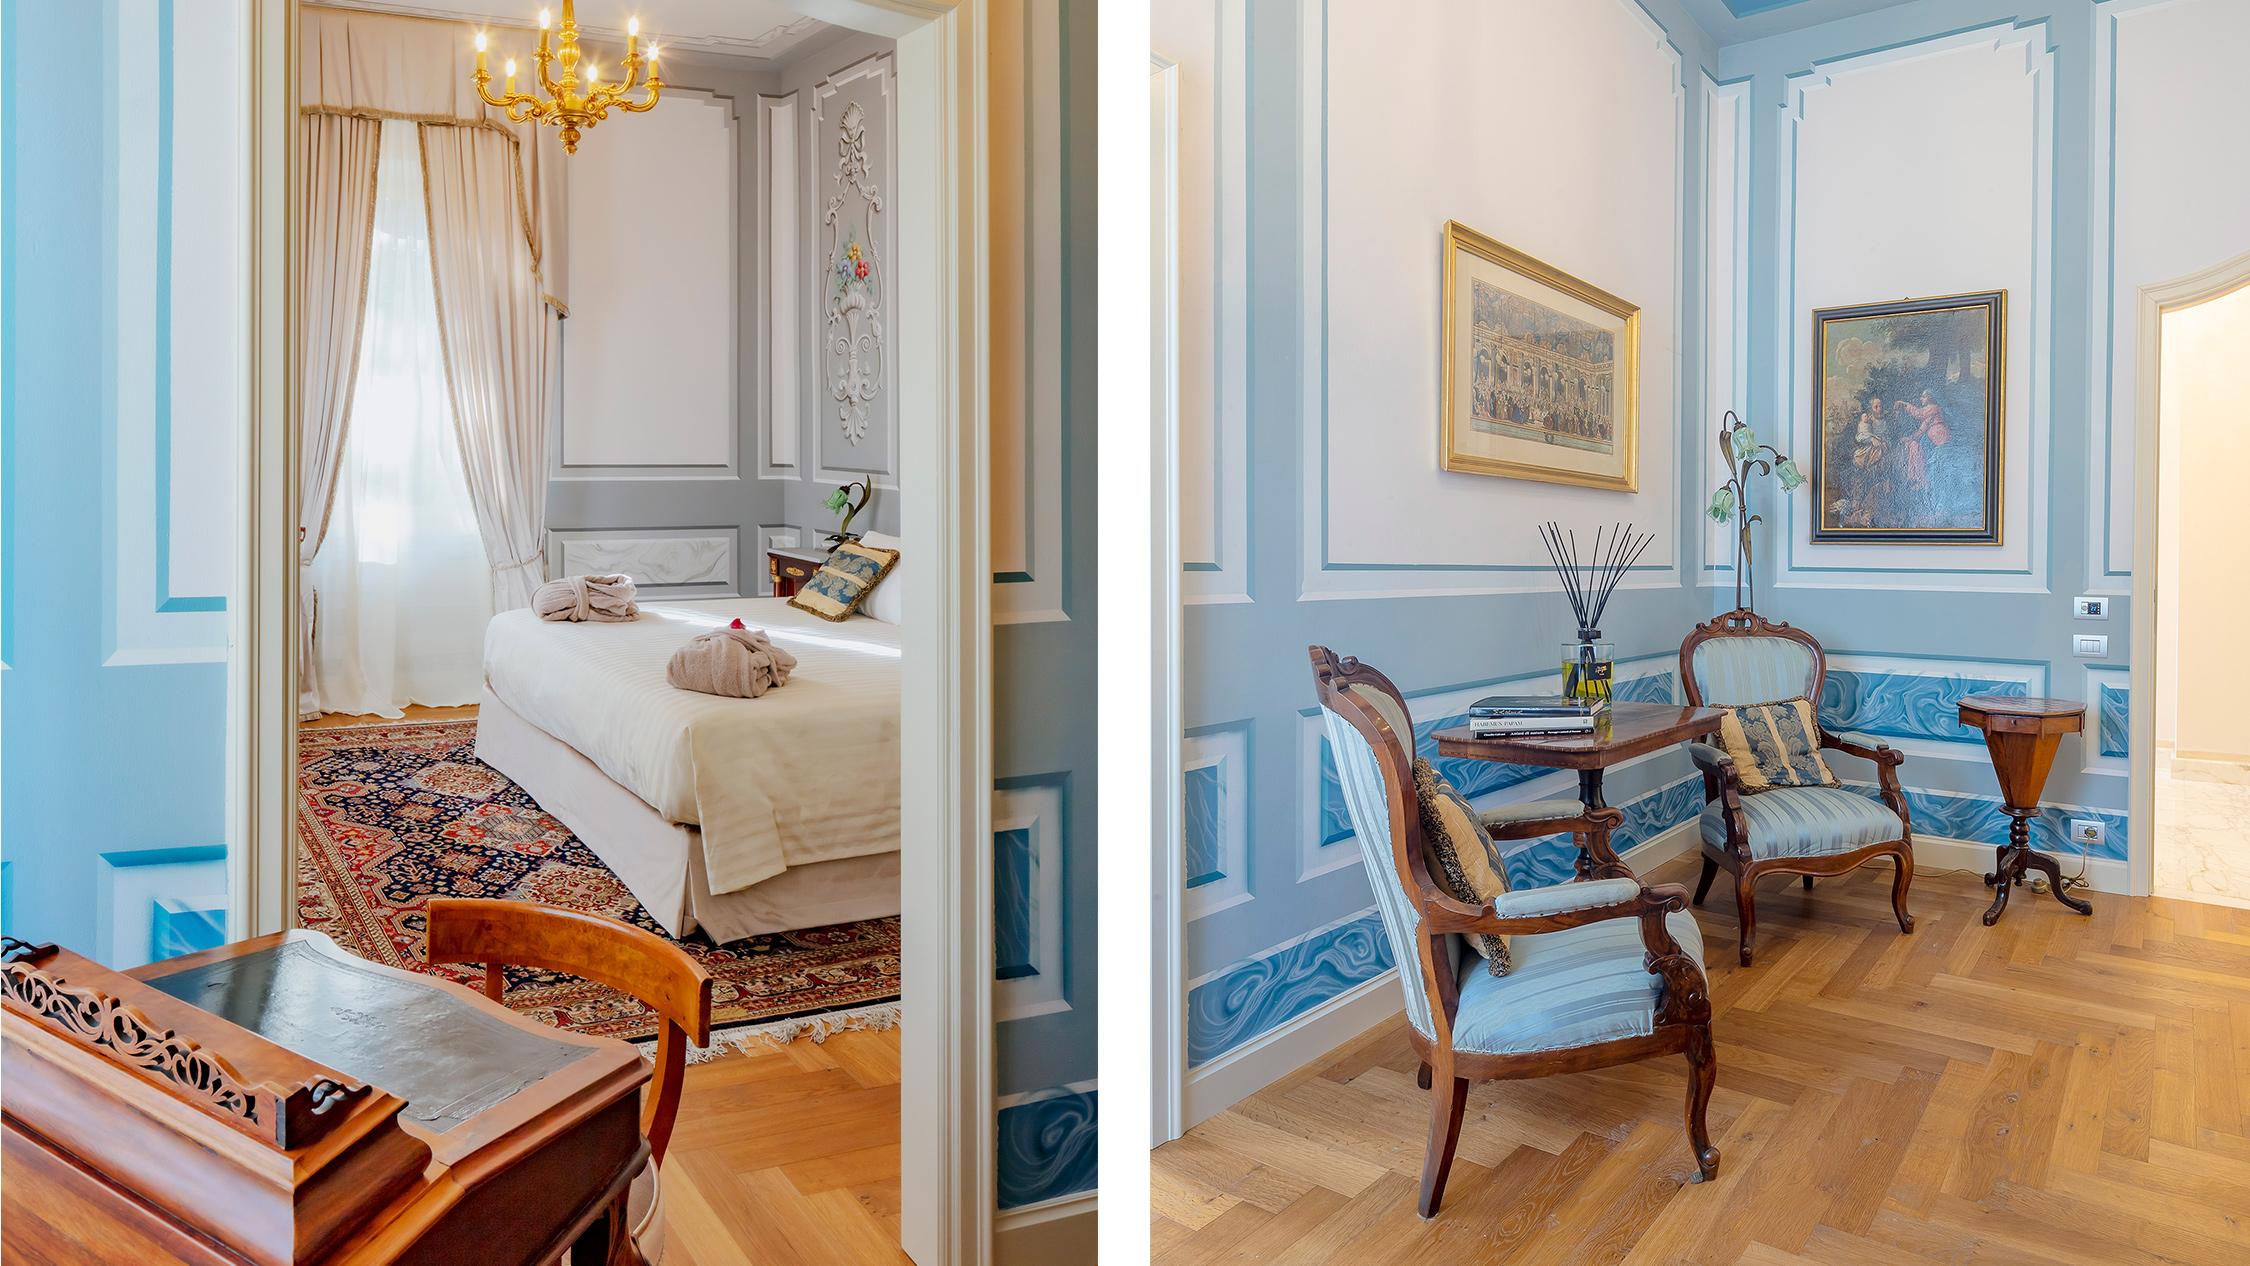 Visconti Suite| Luxury suites in Montepulciano, Tuscany | Villa Valentini Bonaparte